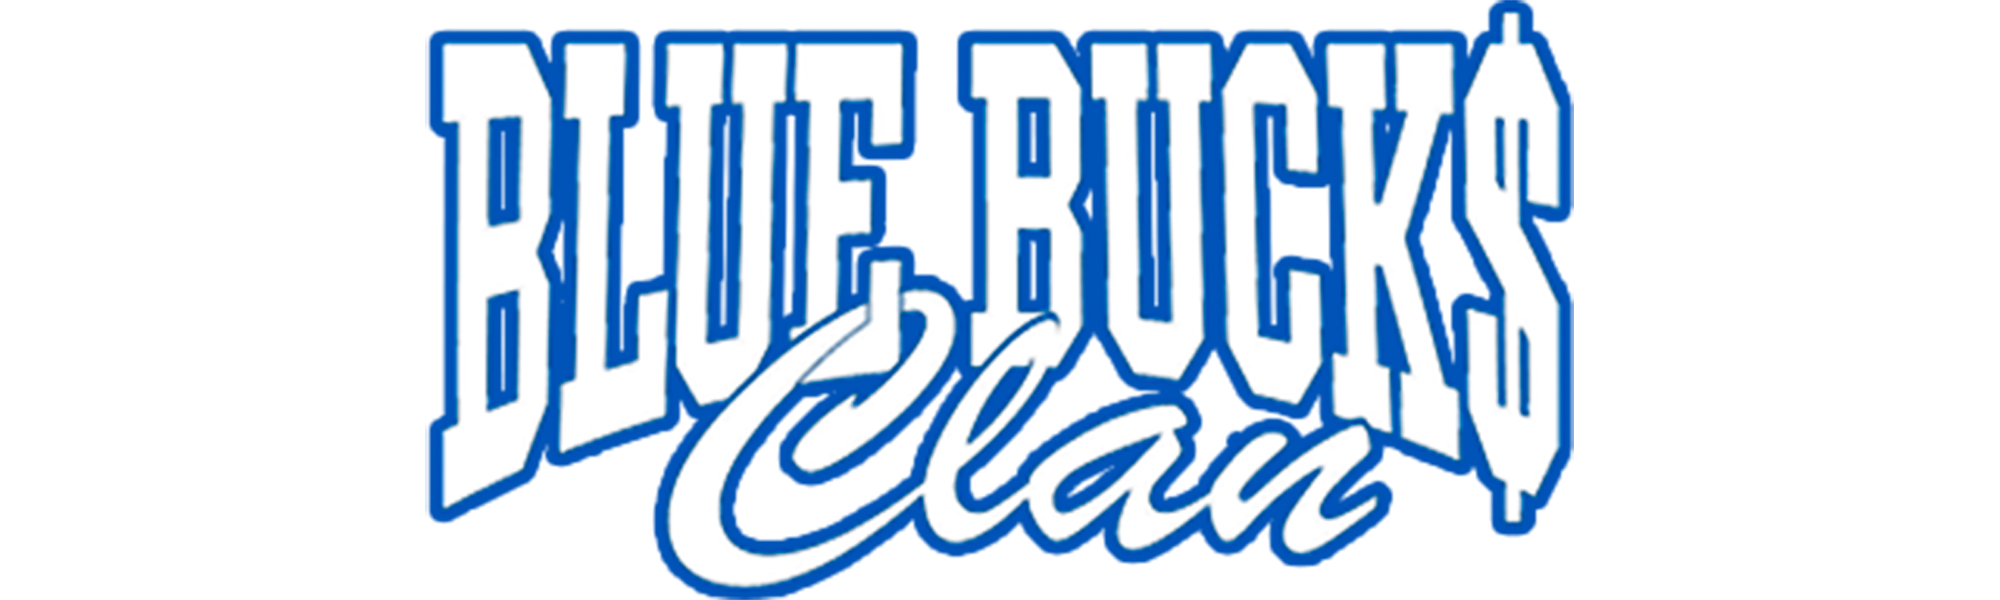 BlueBucksClan Official Store